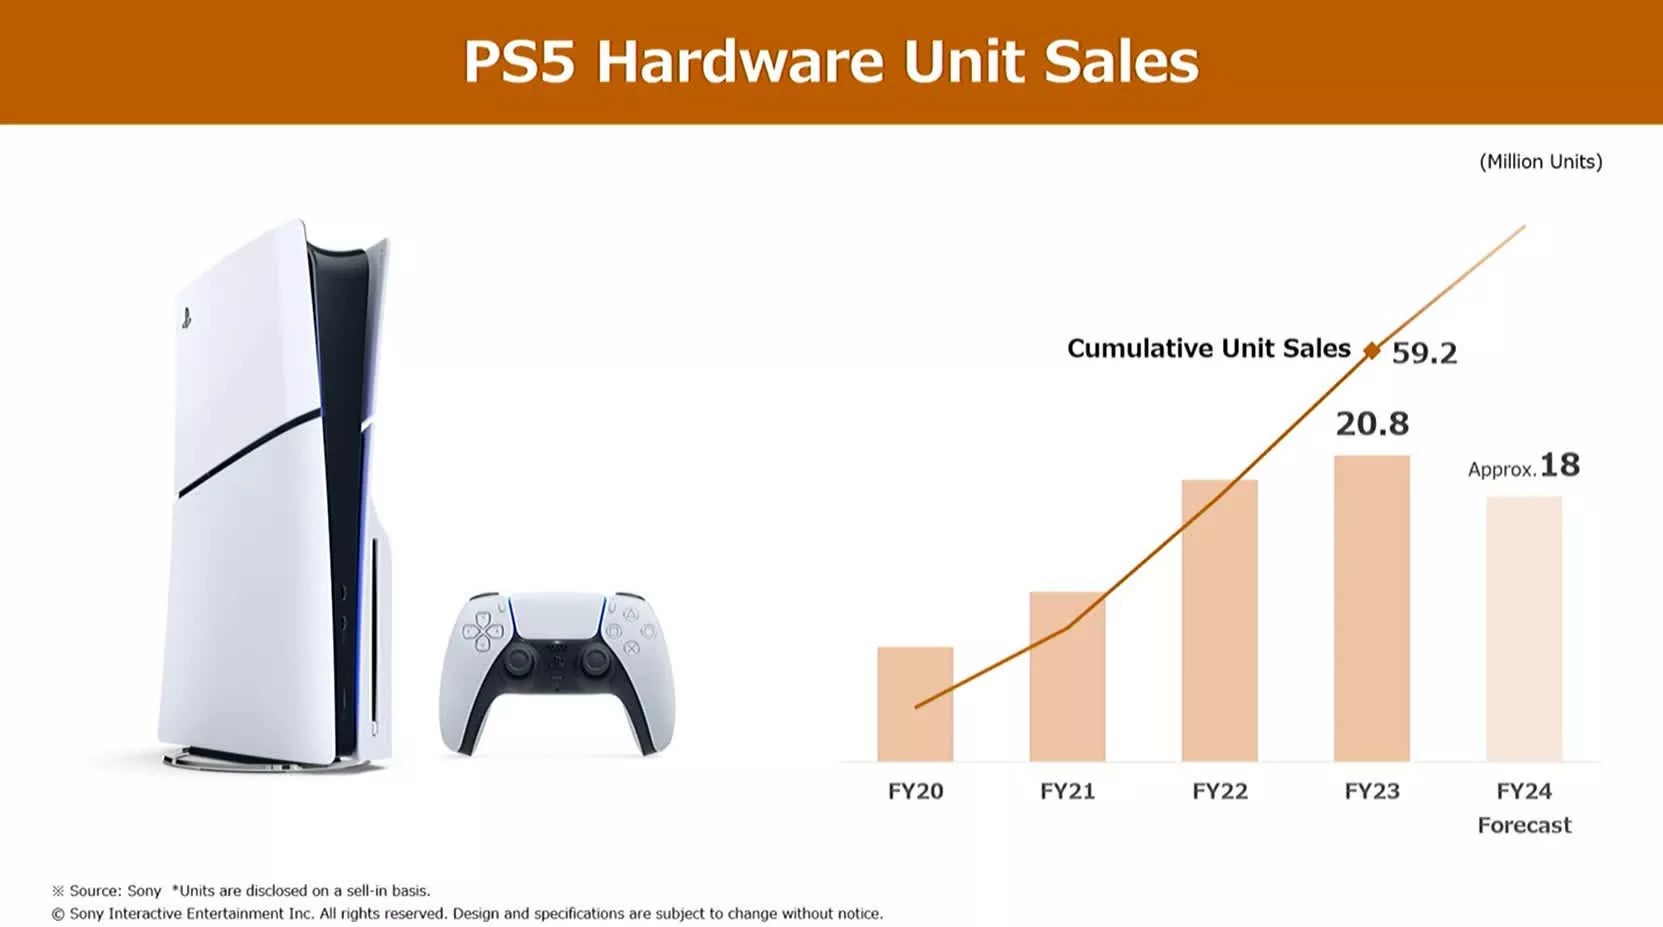 索尼表示PS5生命週期開始往下走、銷量將逐年下滑，但PS商模式自PS4以來已經發生重大轉變